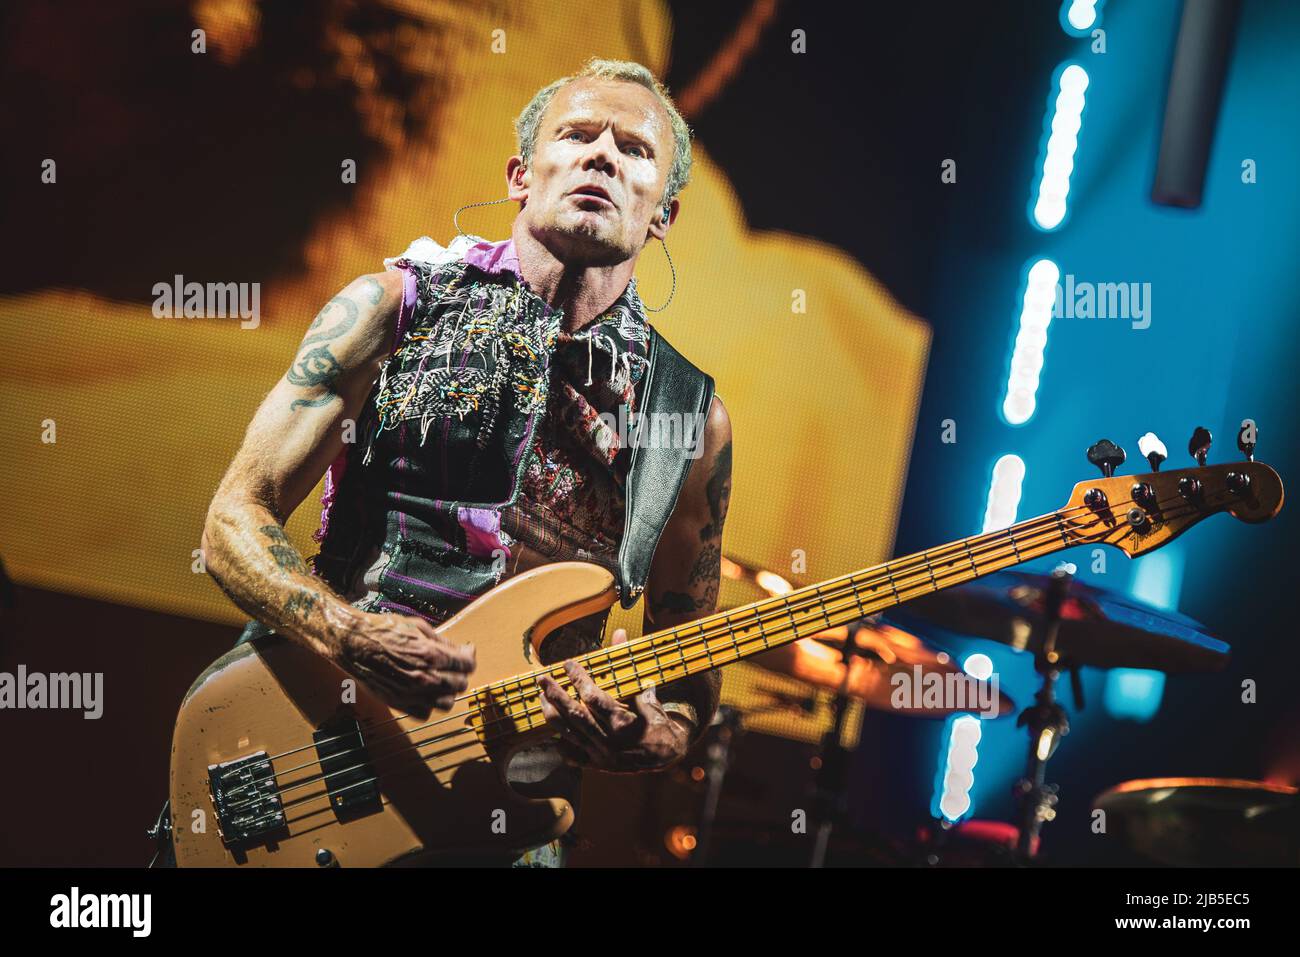 ZURICH, HALLENSTADION, OCTOBRE 5th 2016 : brocante, bassiste du groupe de rock américain Red Hot Chili Peppers, en direct sur scène pour la branche suisse du « Getaway World Tour » Banque D'Images